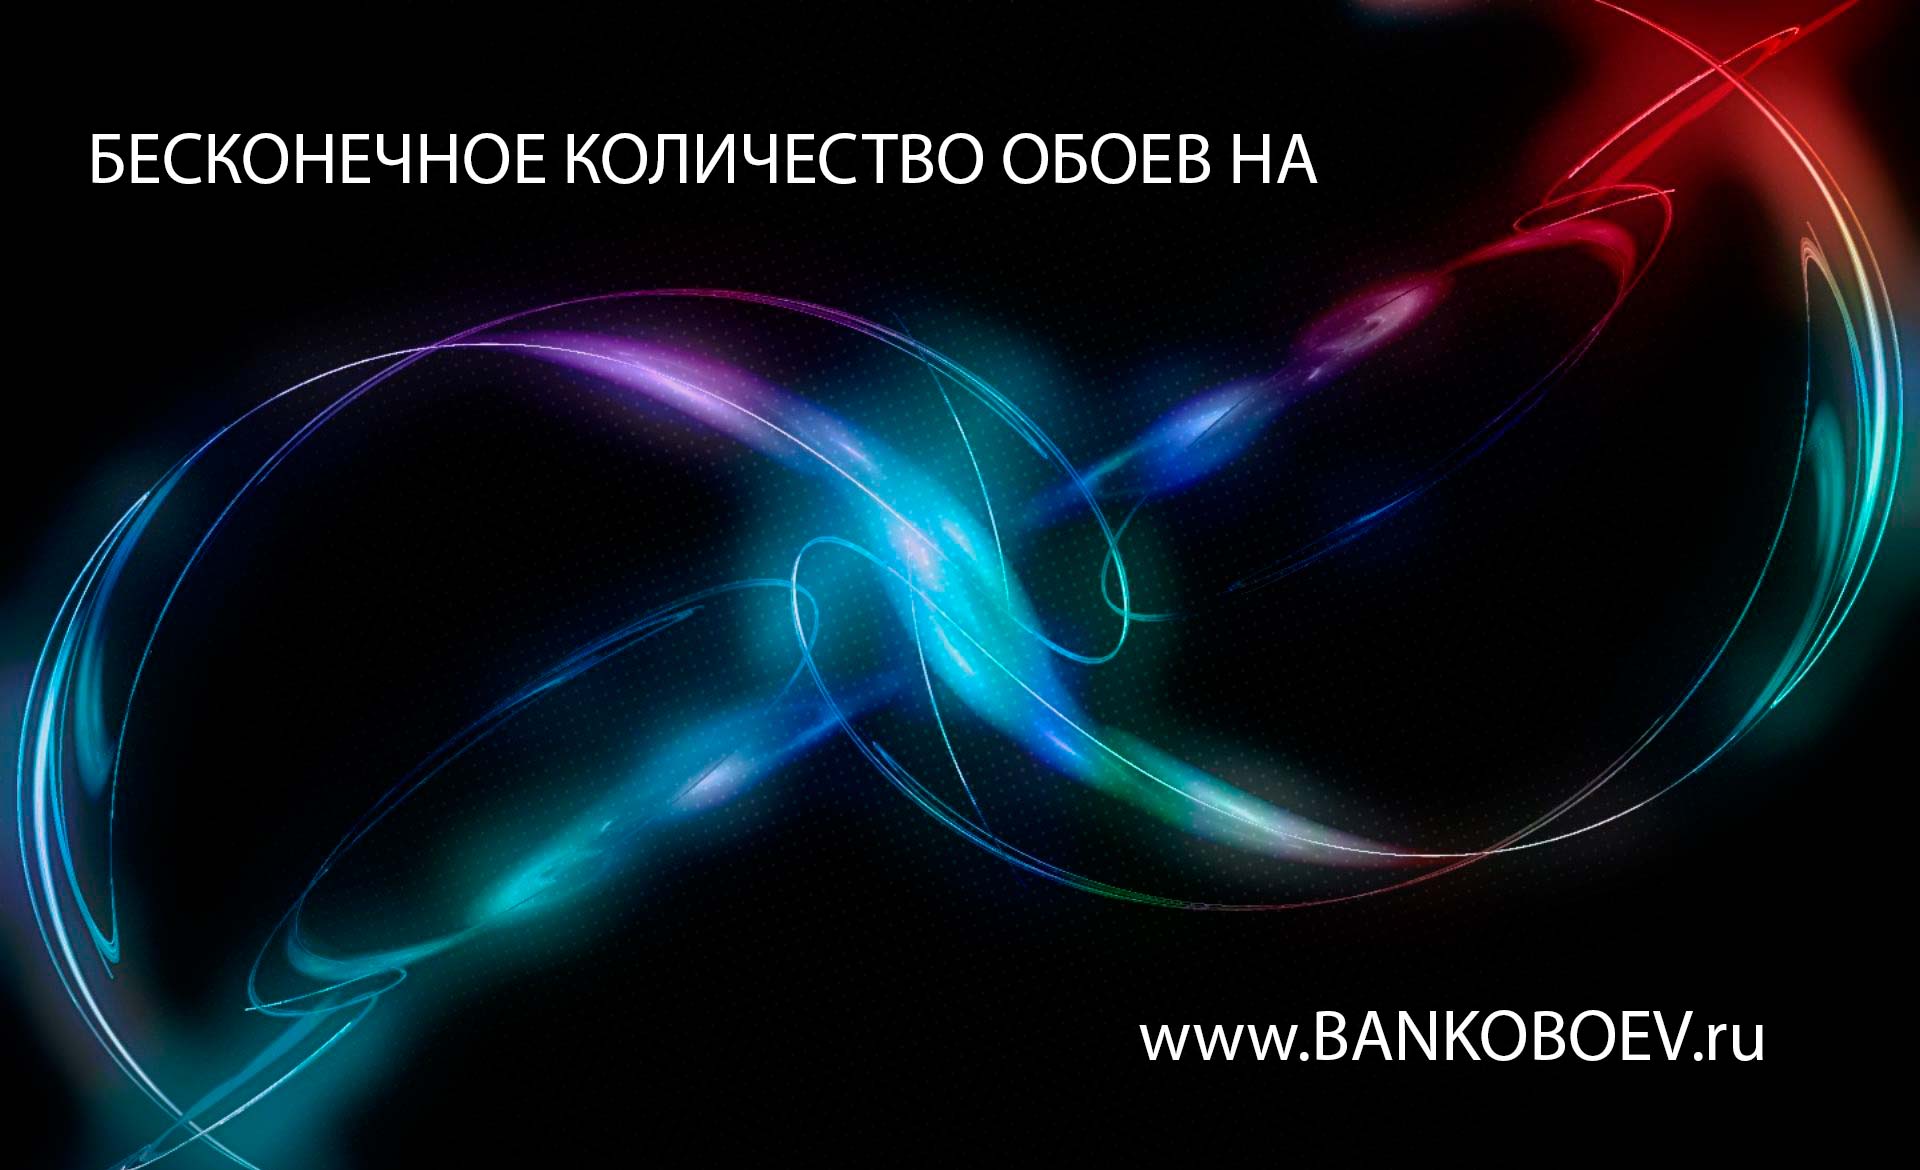 Source Bankoboev Ru Image Ndm2mjc